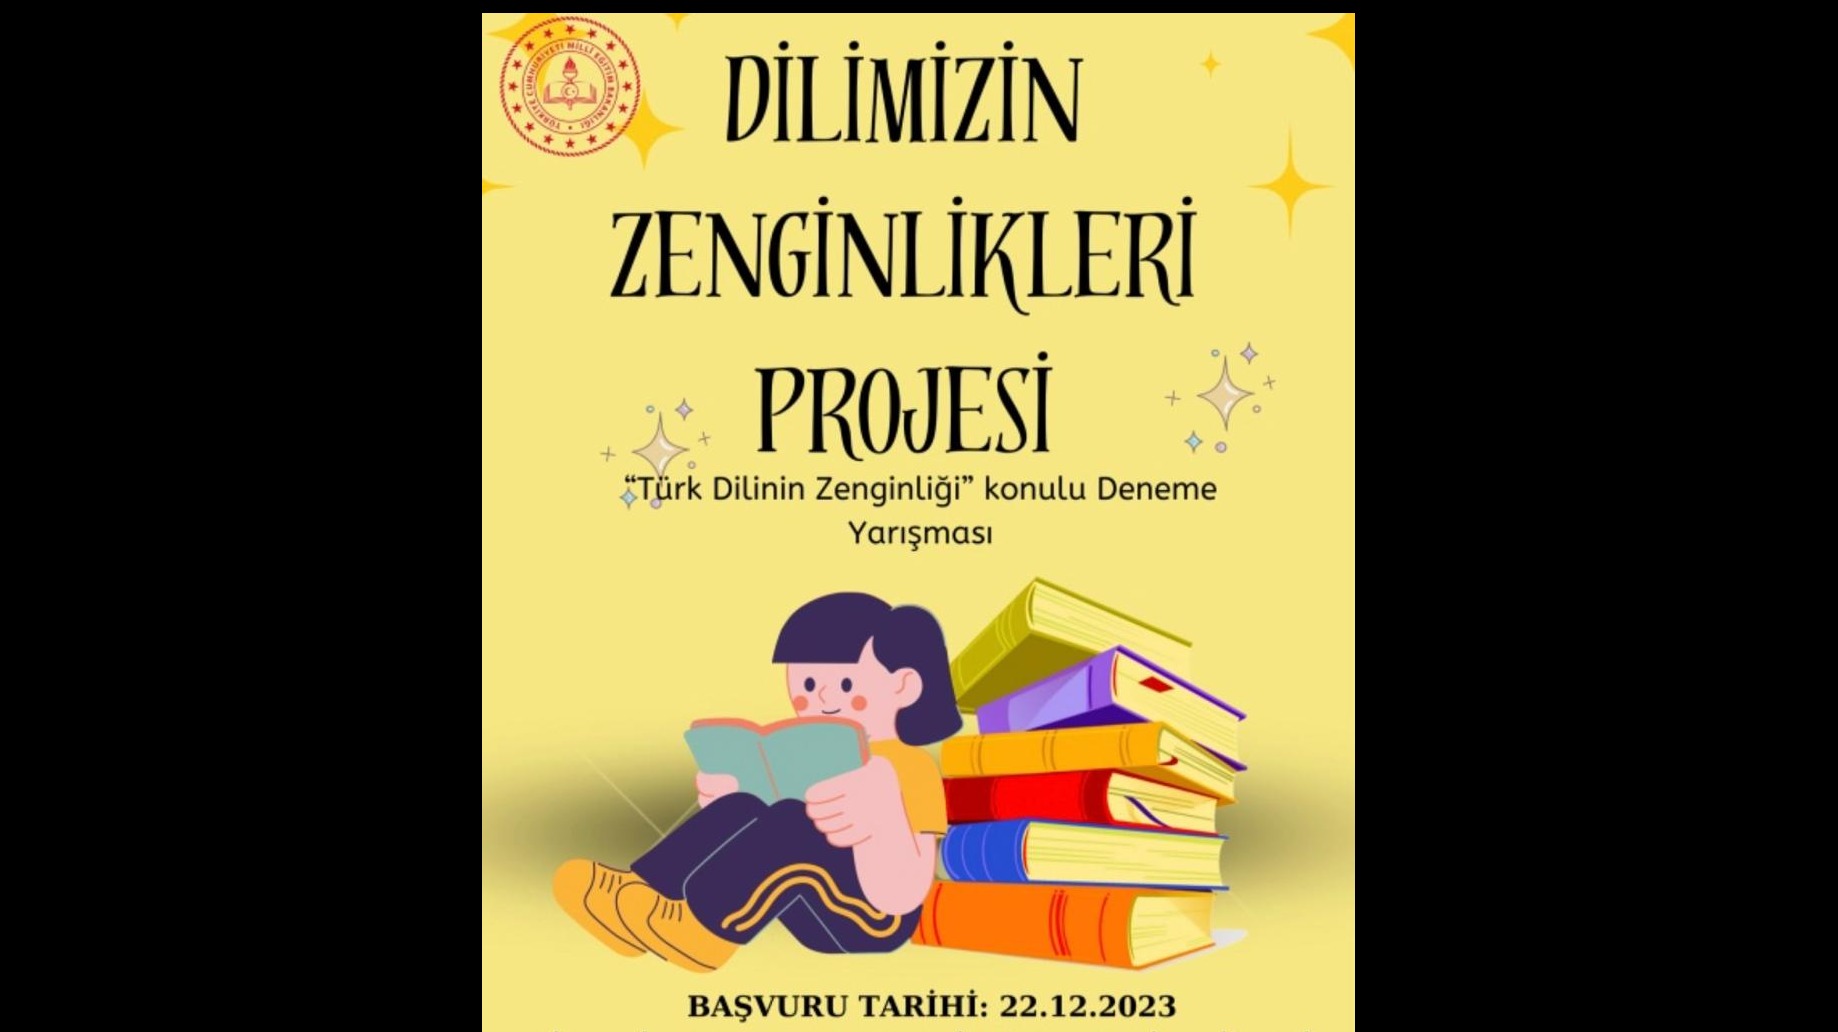 Haydi Gençler  Türk Dilinin Zenginliği konulu deneme yazıyoruz.